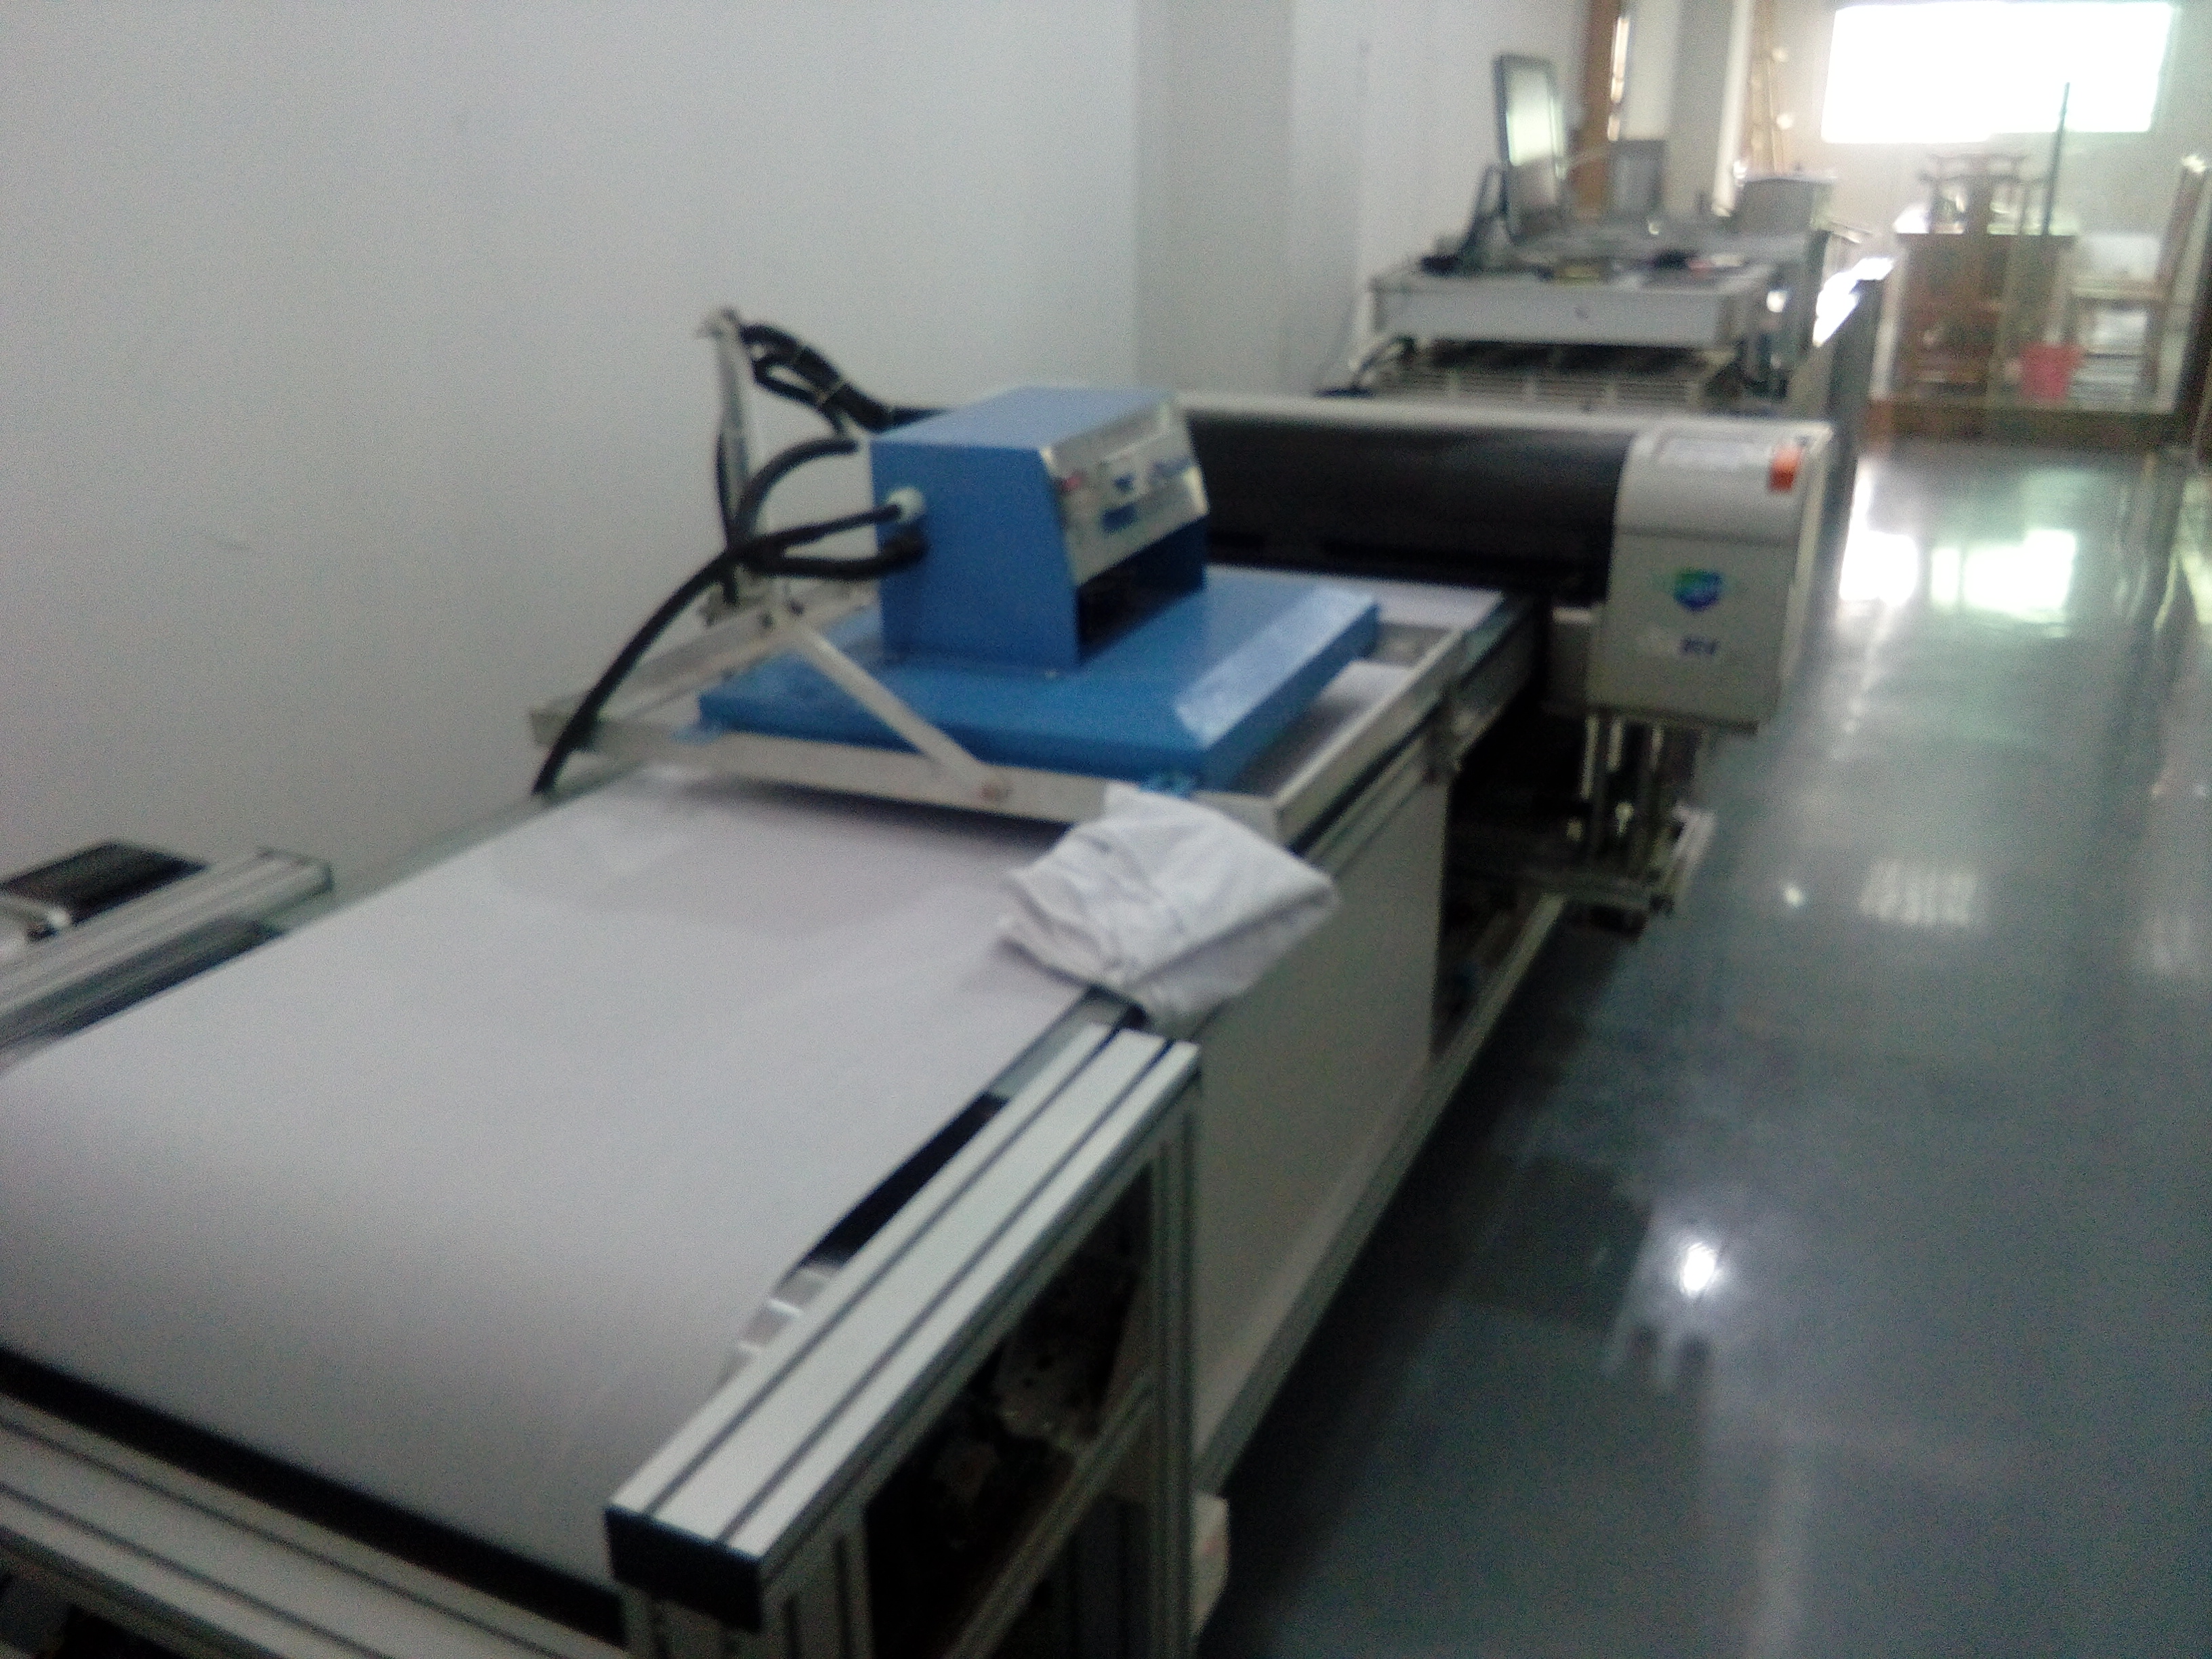 广州市全棉印花机 直喷印花机 数码印花厂家供应用于服装印花的全棉印花机 直喷印花机 数码印花